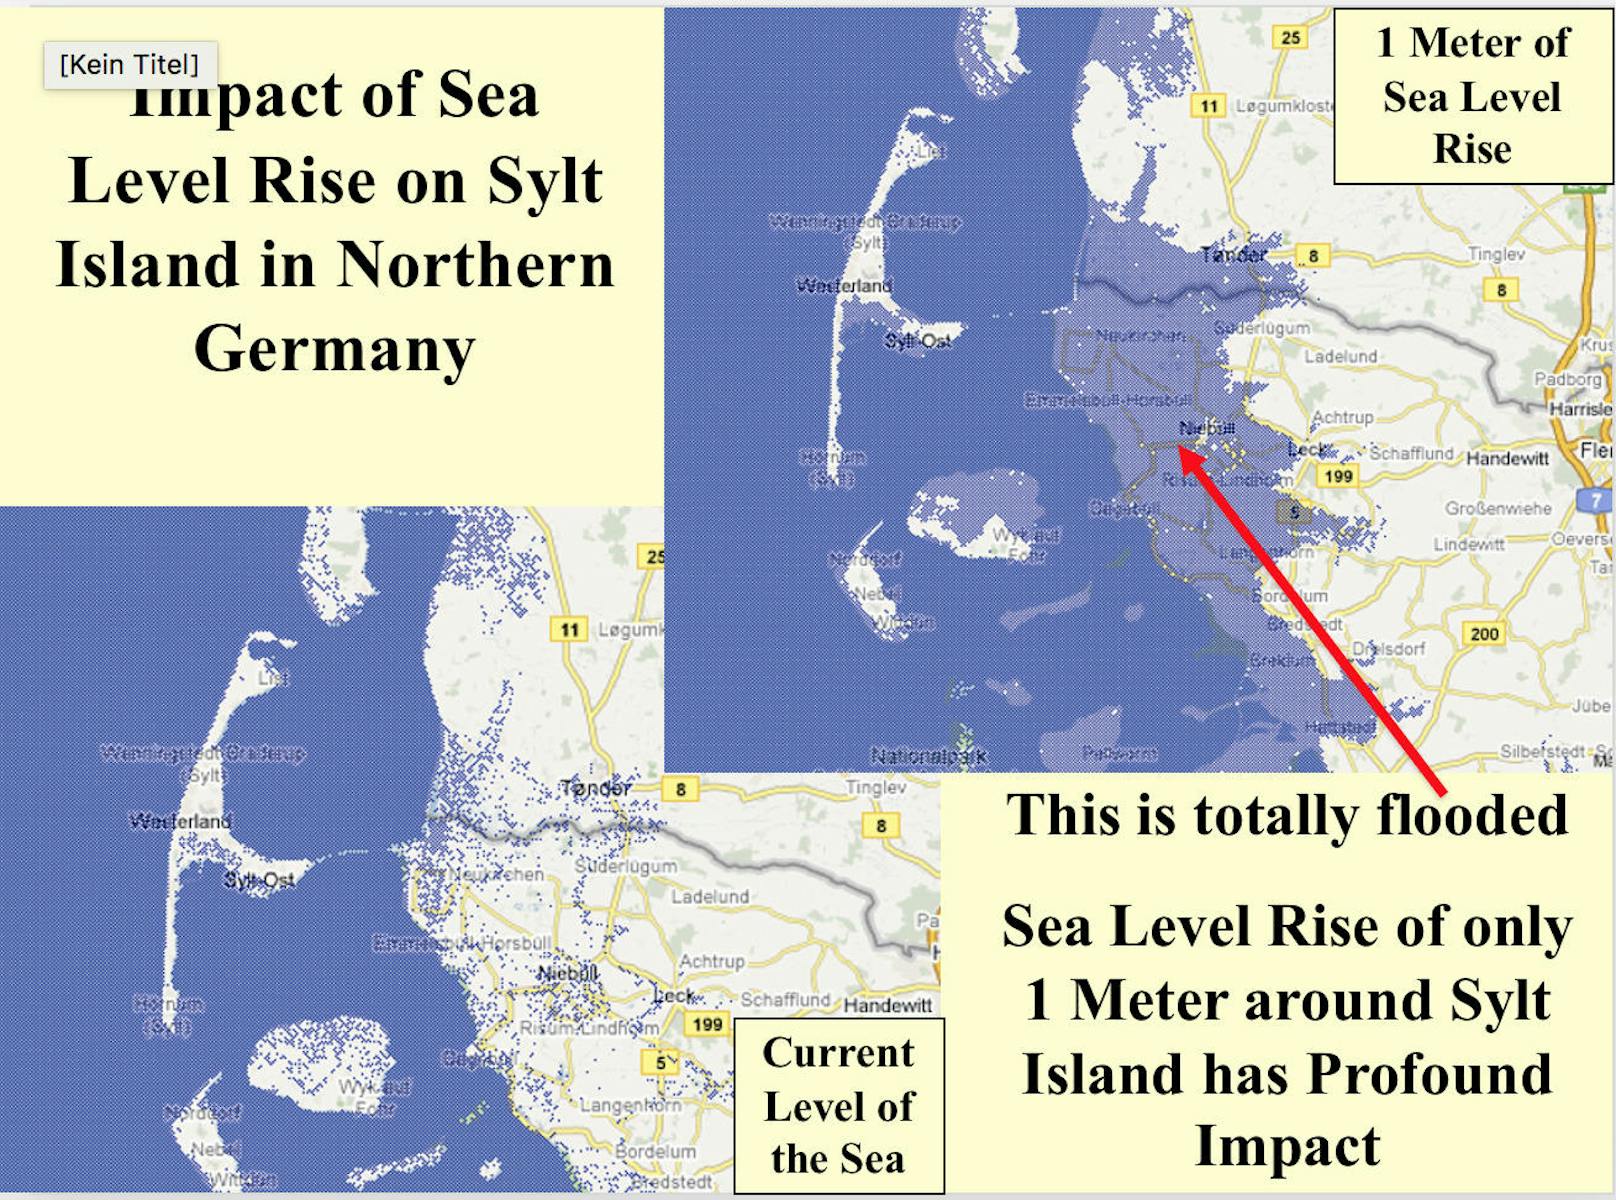 Hammer: Wenn der Meeresspiegel nur um einen Meter ansteigen würde, stünden große Teile der deutschen Nordseeküste und die vorgelagerten Inseln unter Wasser.